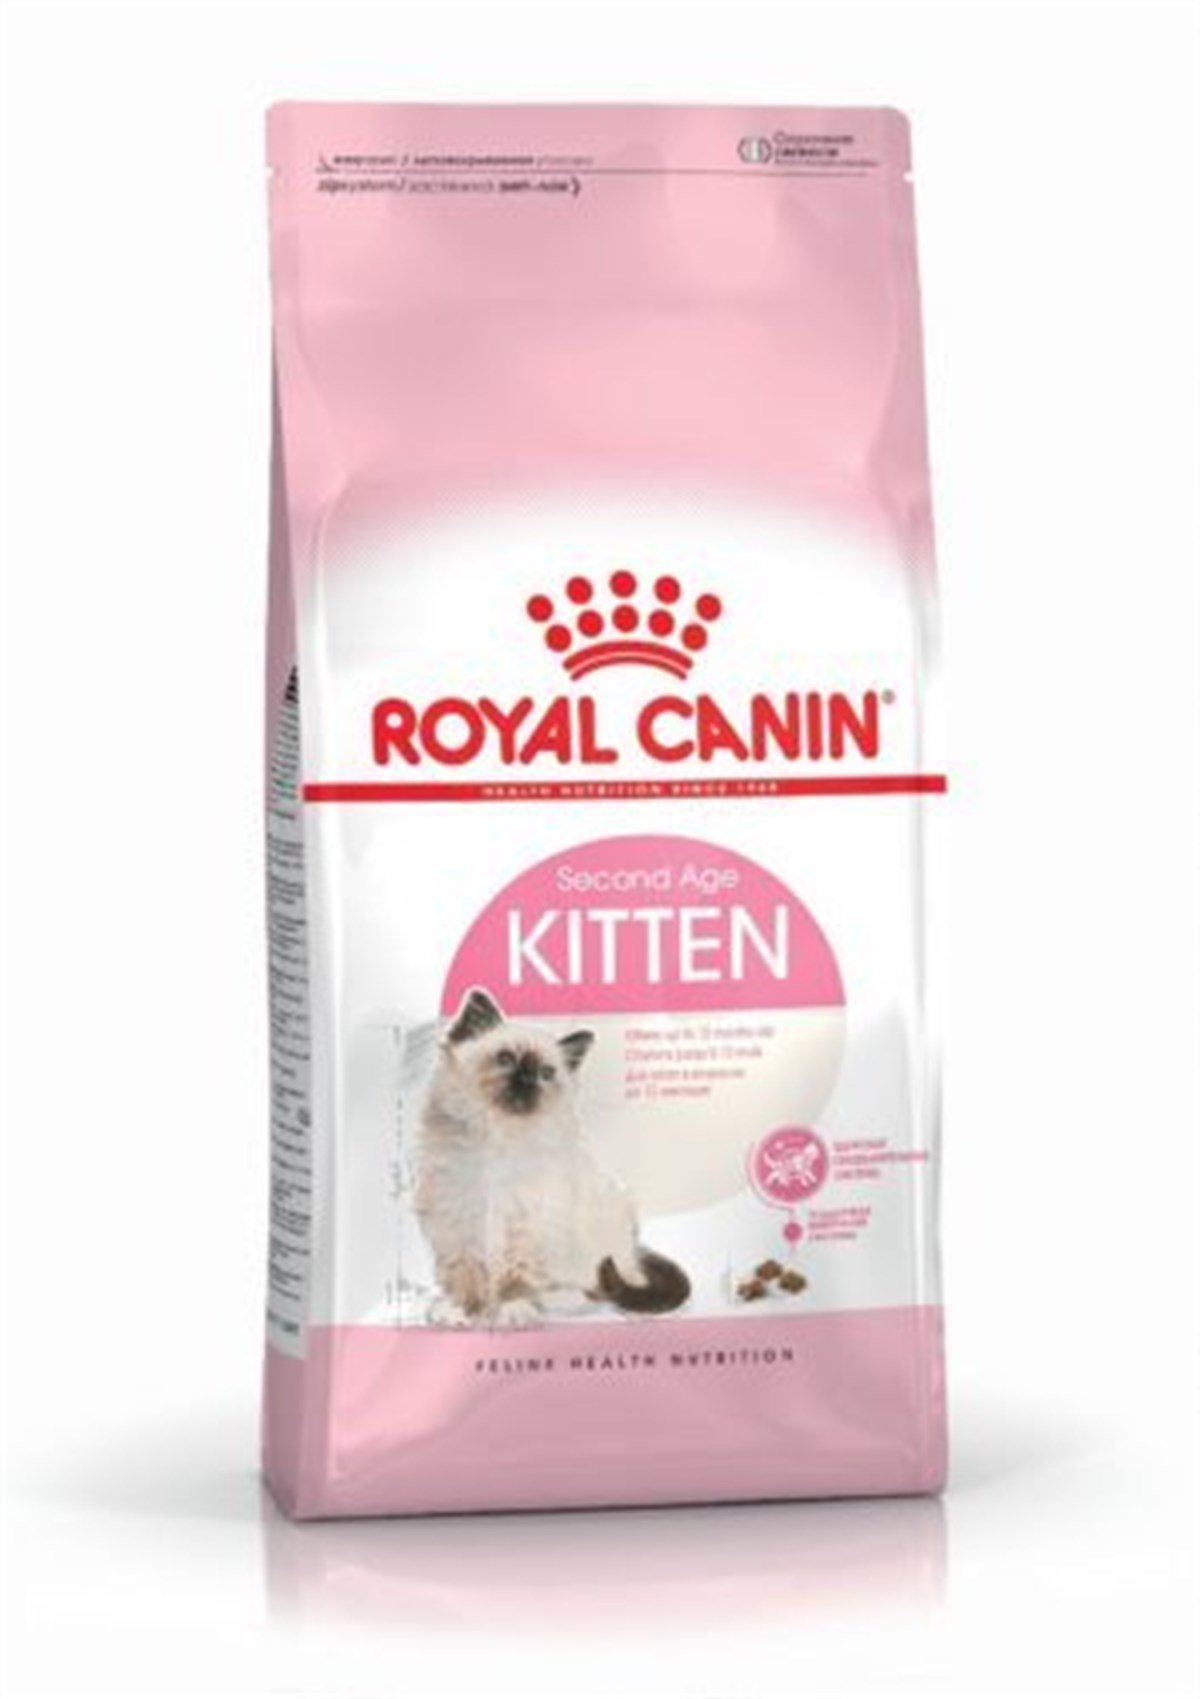 Royal Canin Kitten Yavru Kedi Maması 2 Kg